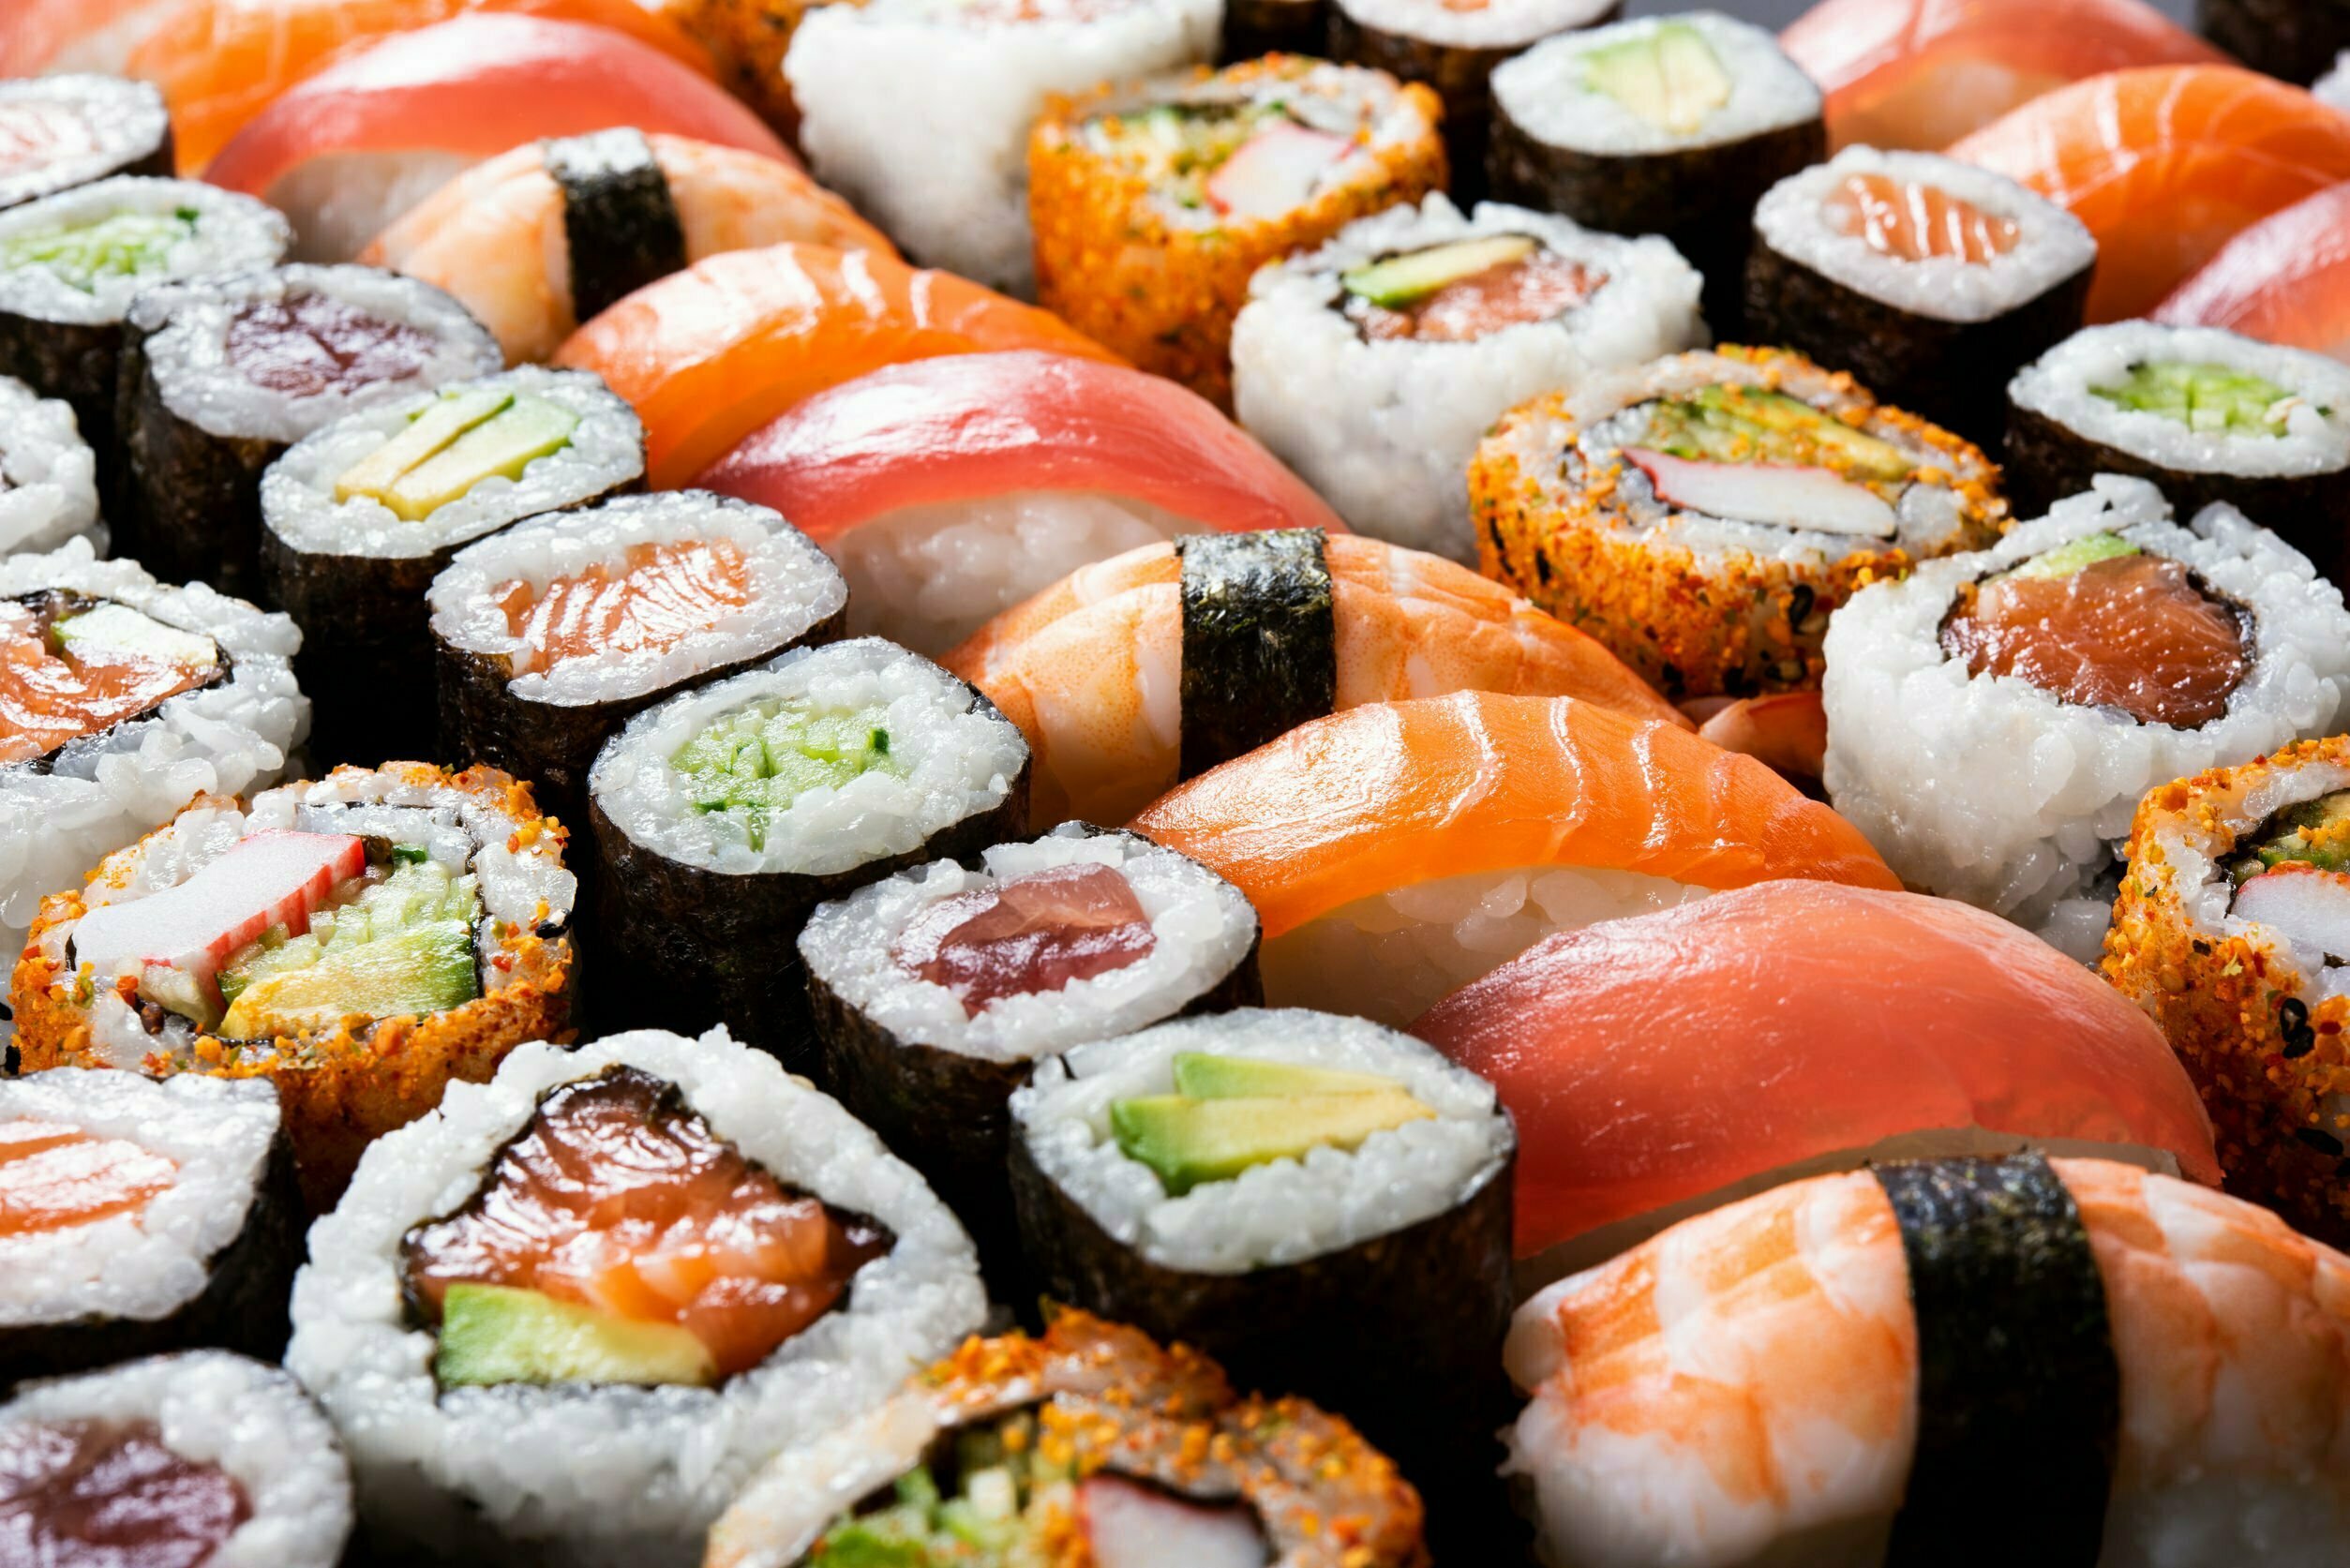 Worm nestelt zich in amandelen van sushi-etende vrouw 24